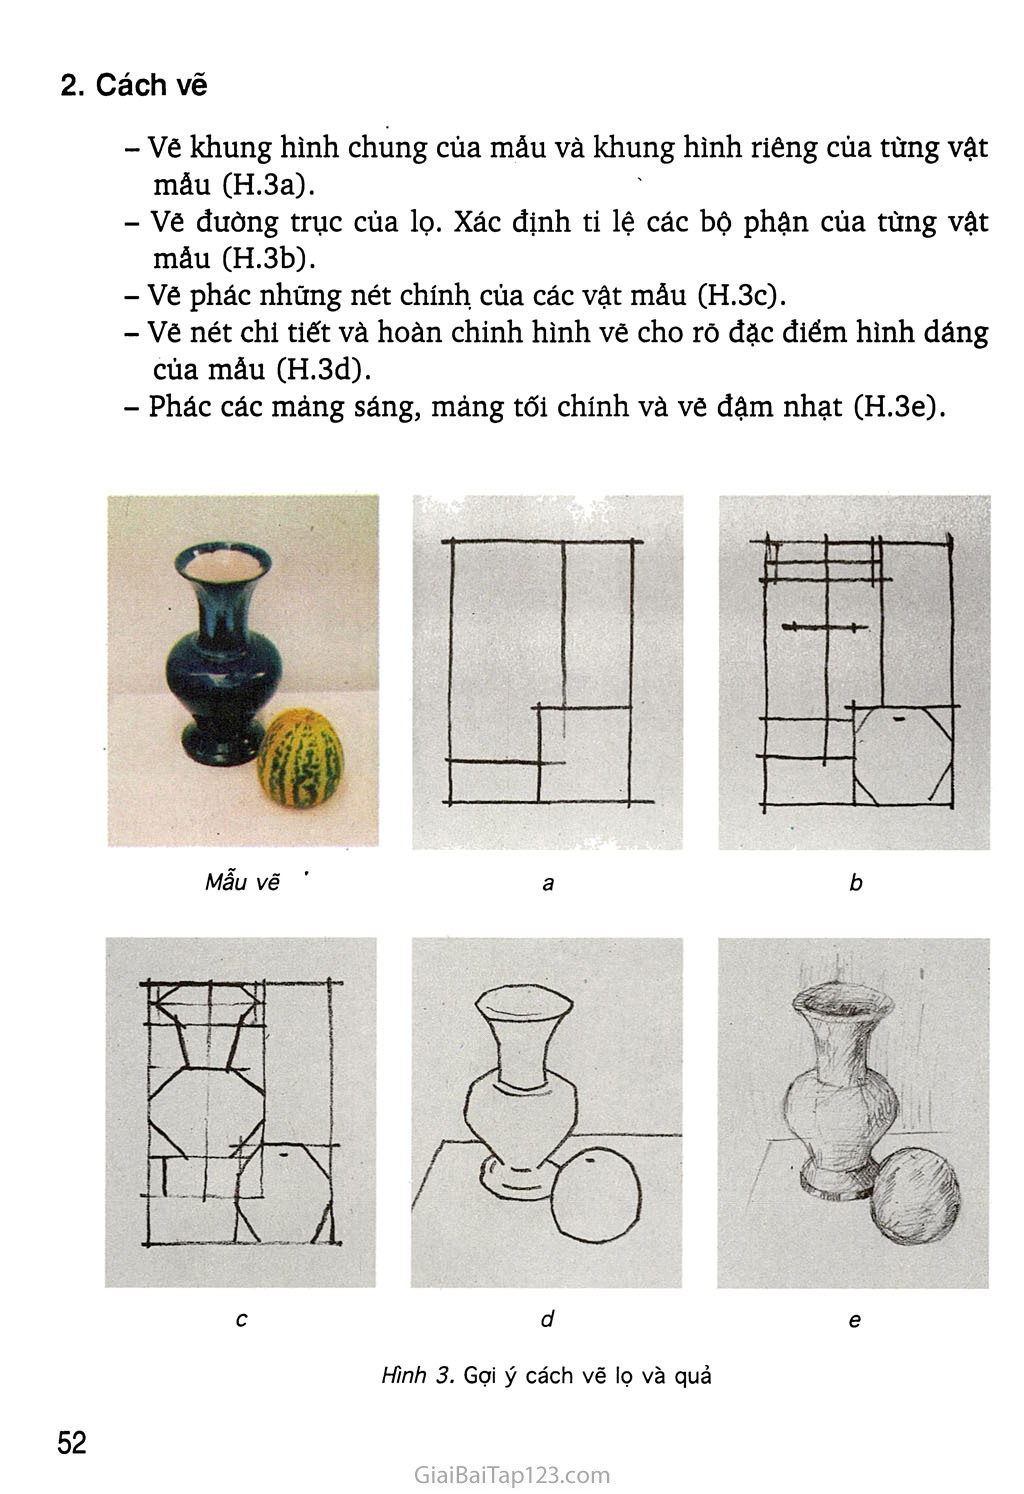 Mĩ thuật 6 bài 4  Vẽ theo mẫu hình hộp và hình cầu  Hướng dẫn vẽ theo mẫu   Center ART  YouTube